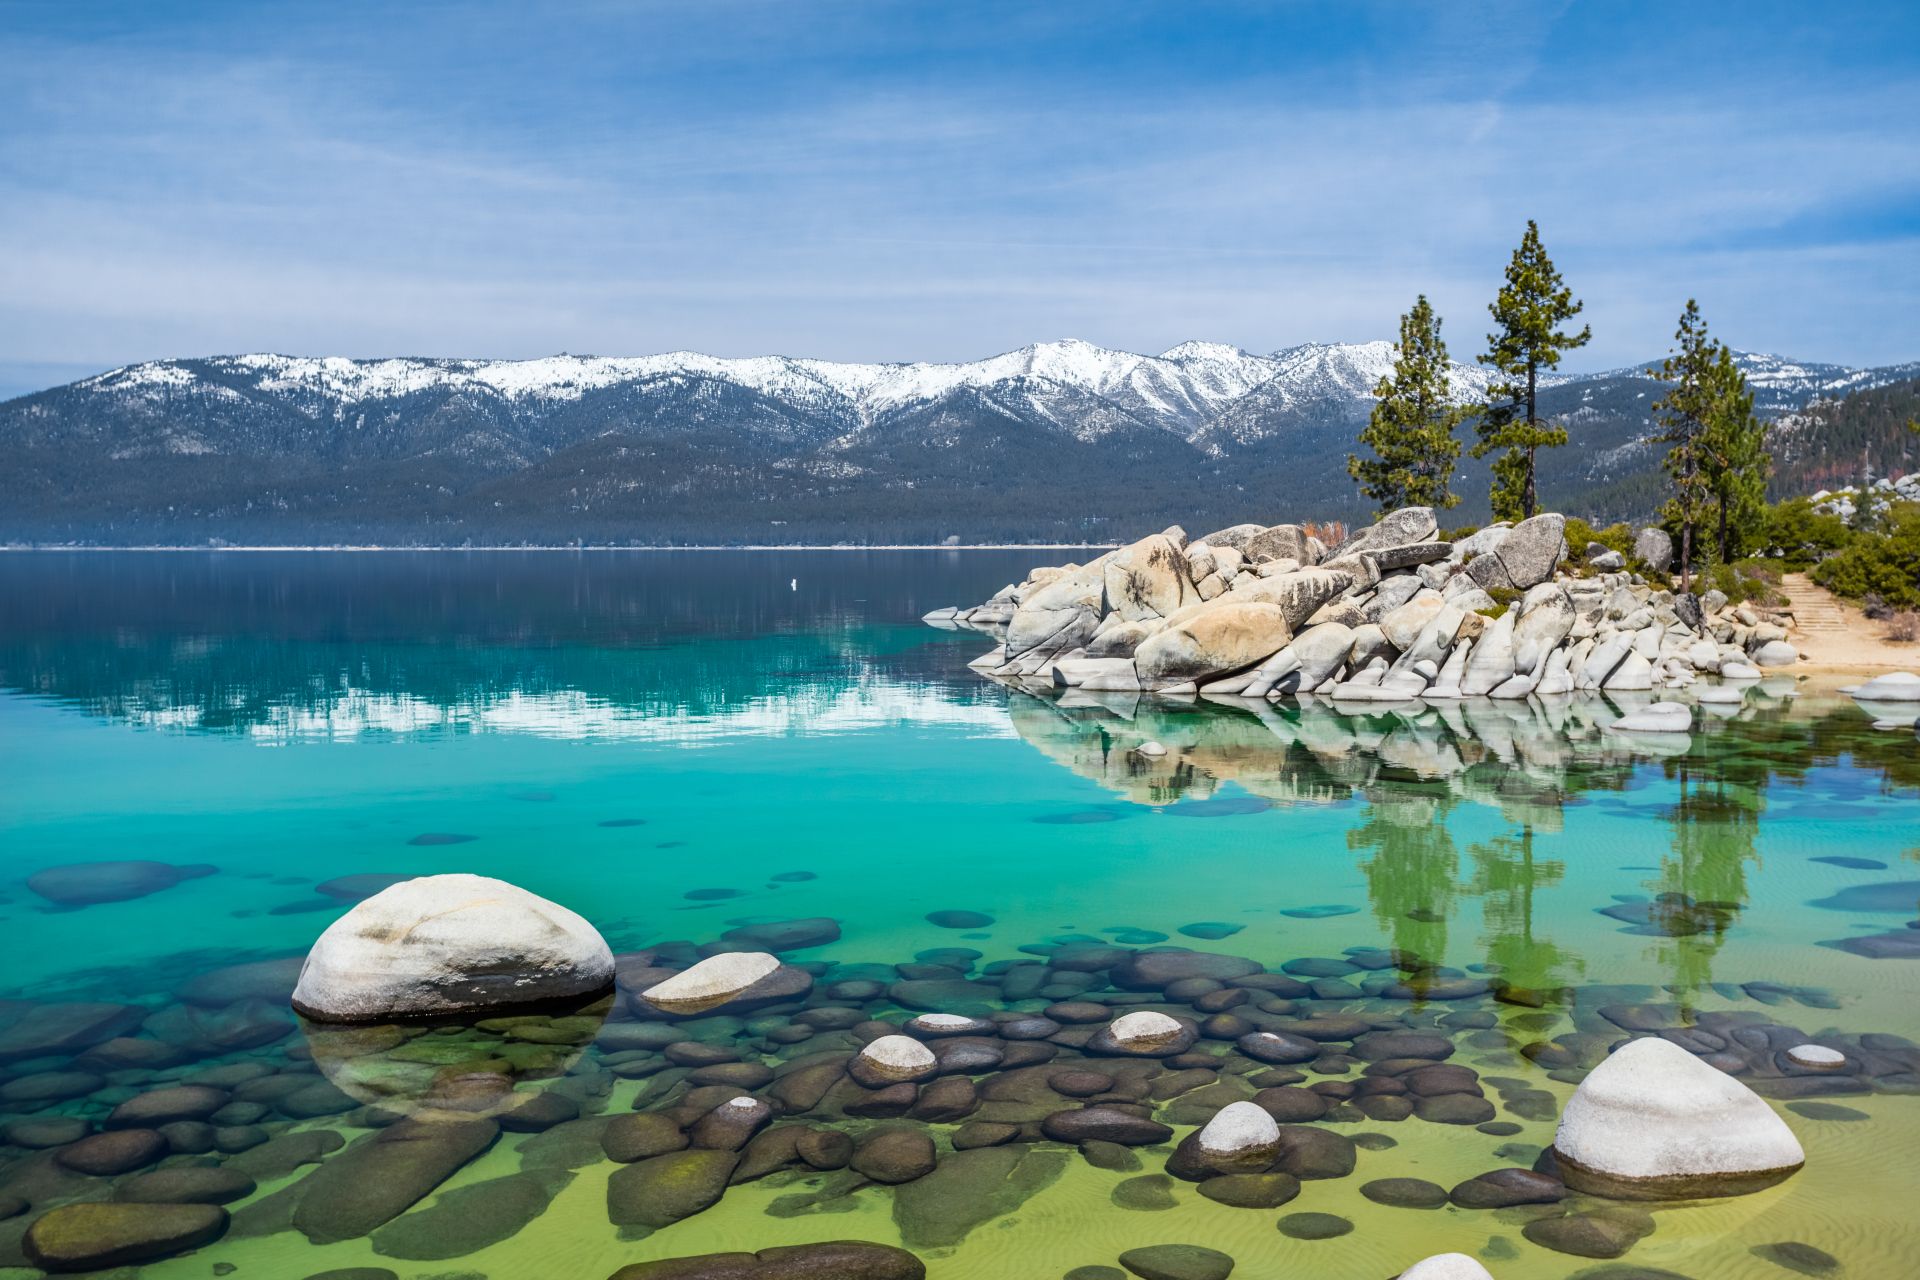 Las hermosas aguas cristalinas del lago Tahoe